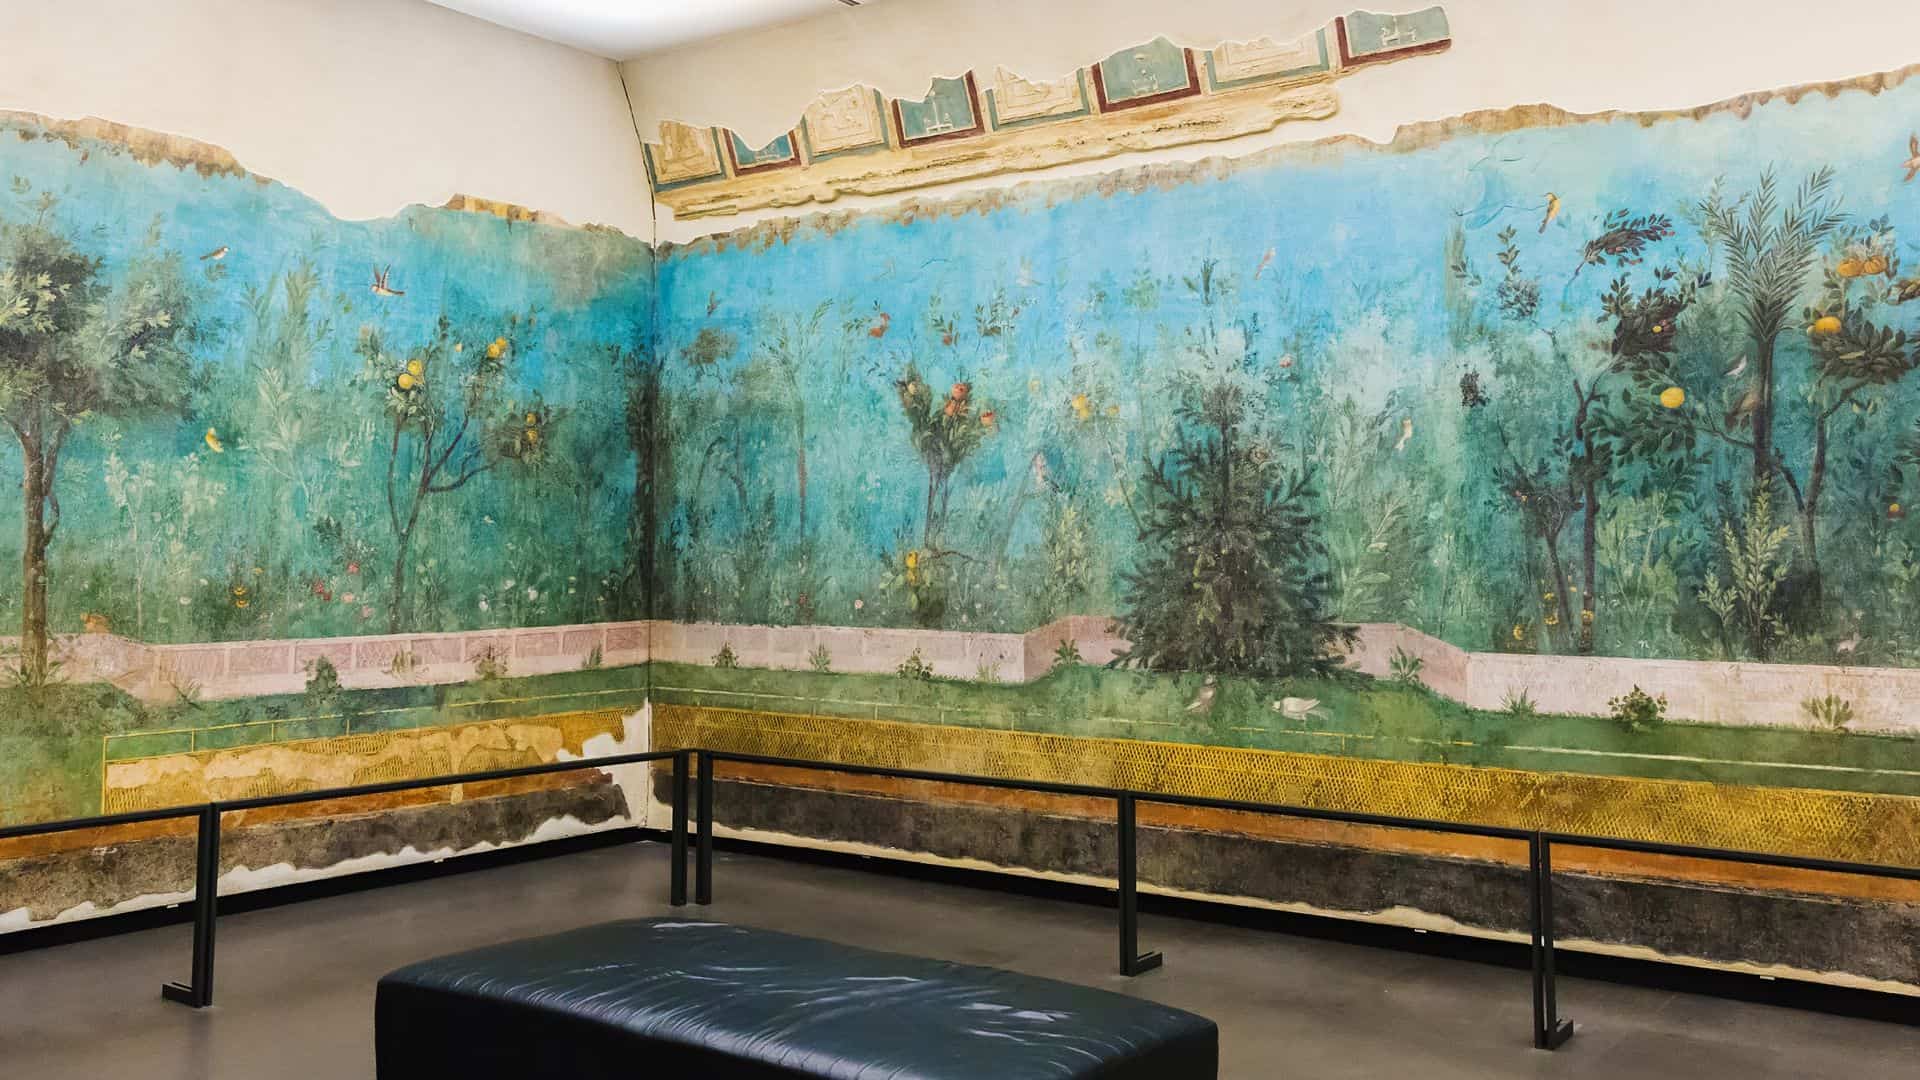 The frescoed walls of Livia's Garden.